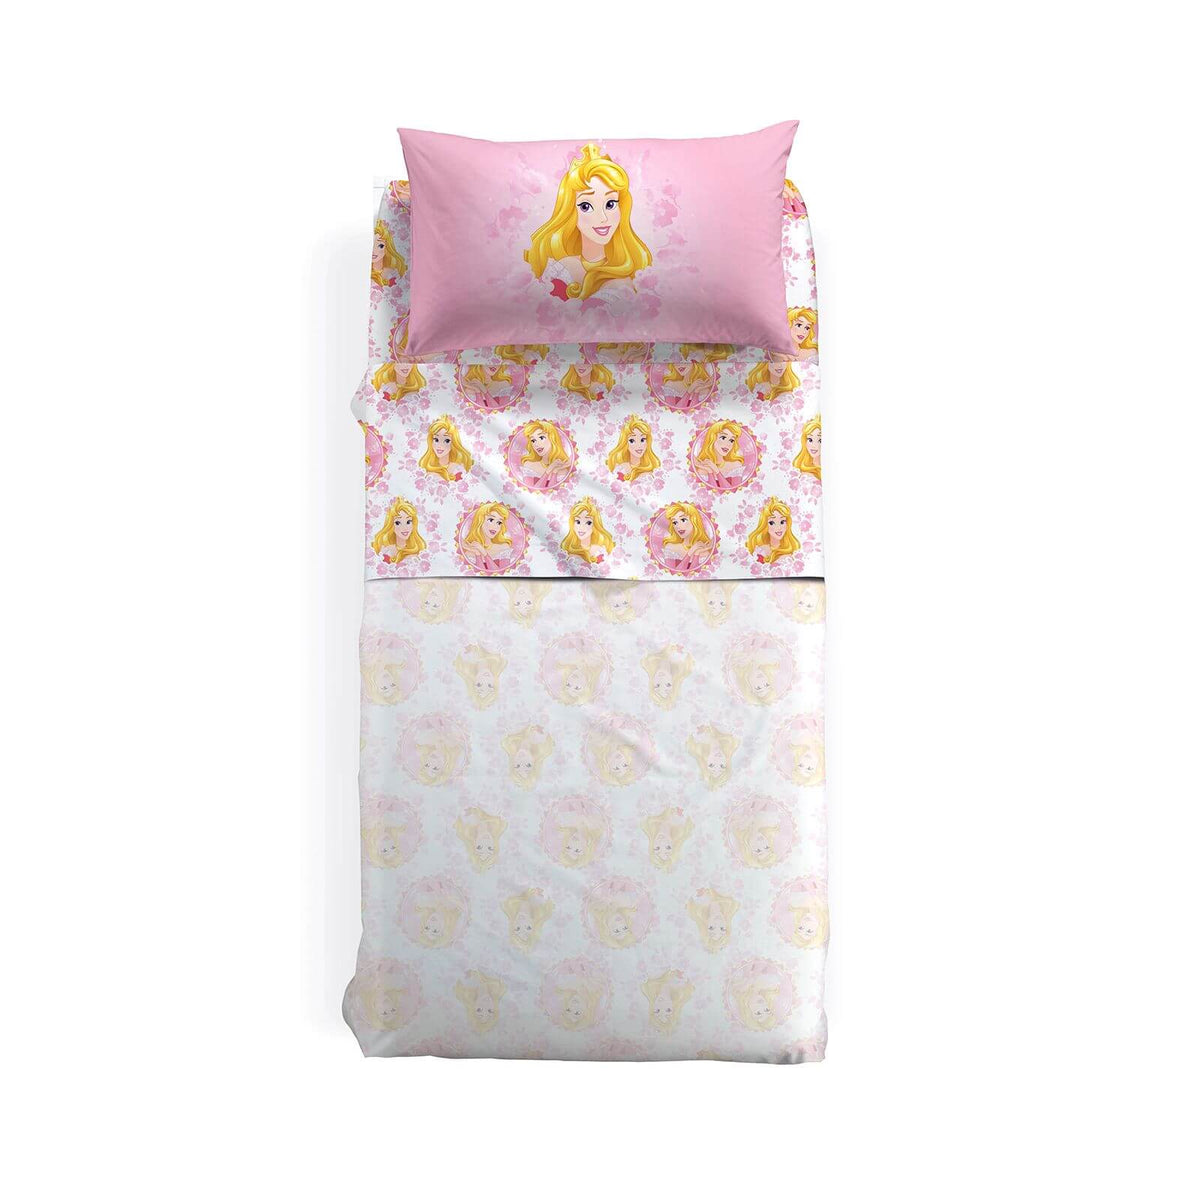 Completo lenzuola per bambina Princess Aurora, in puro cotone della linea Caleffi Disney. Fantasia Principesse.